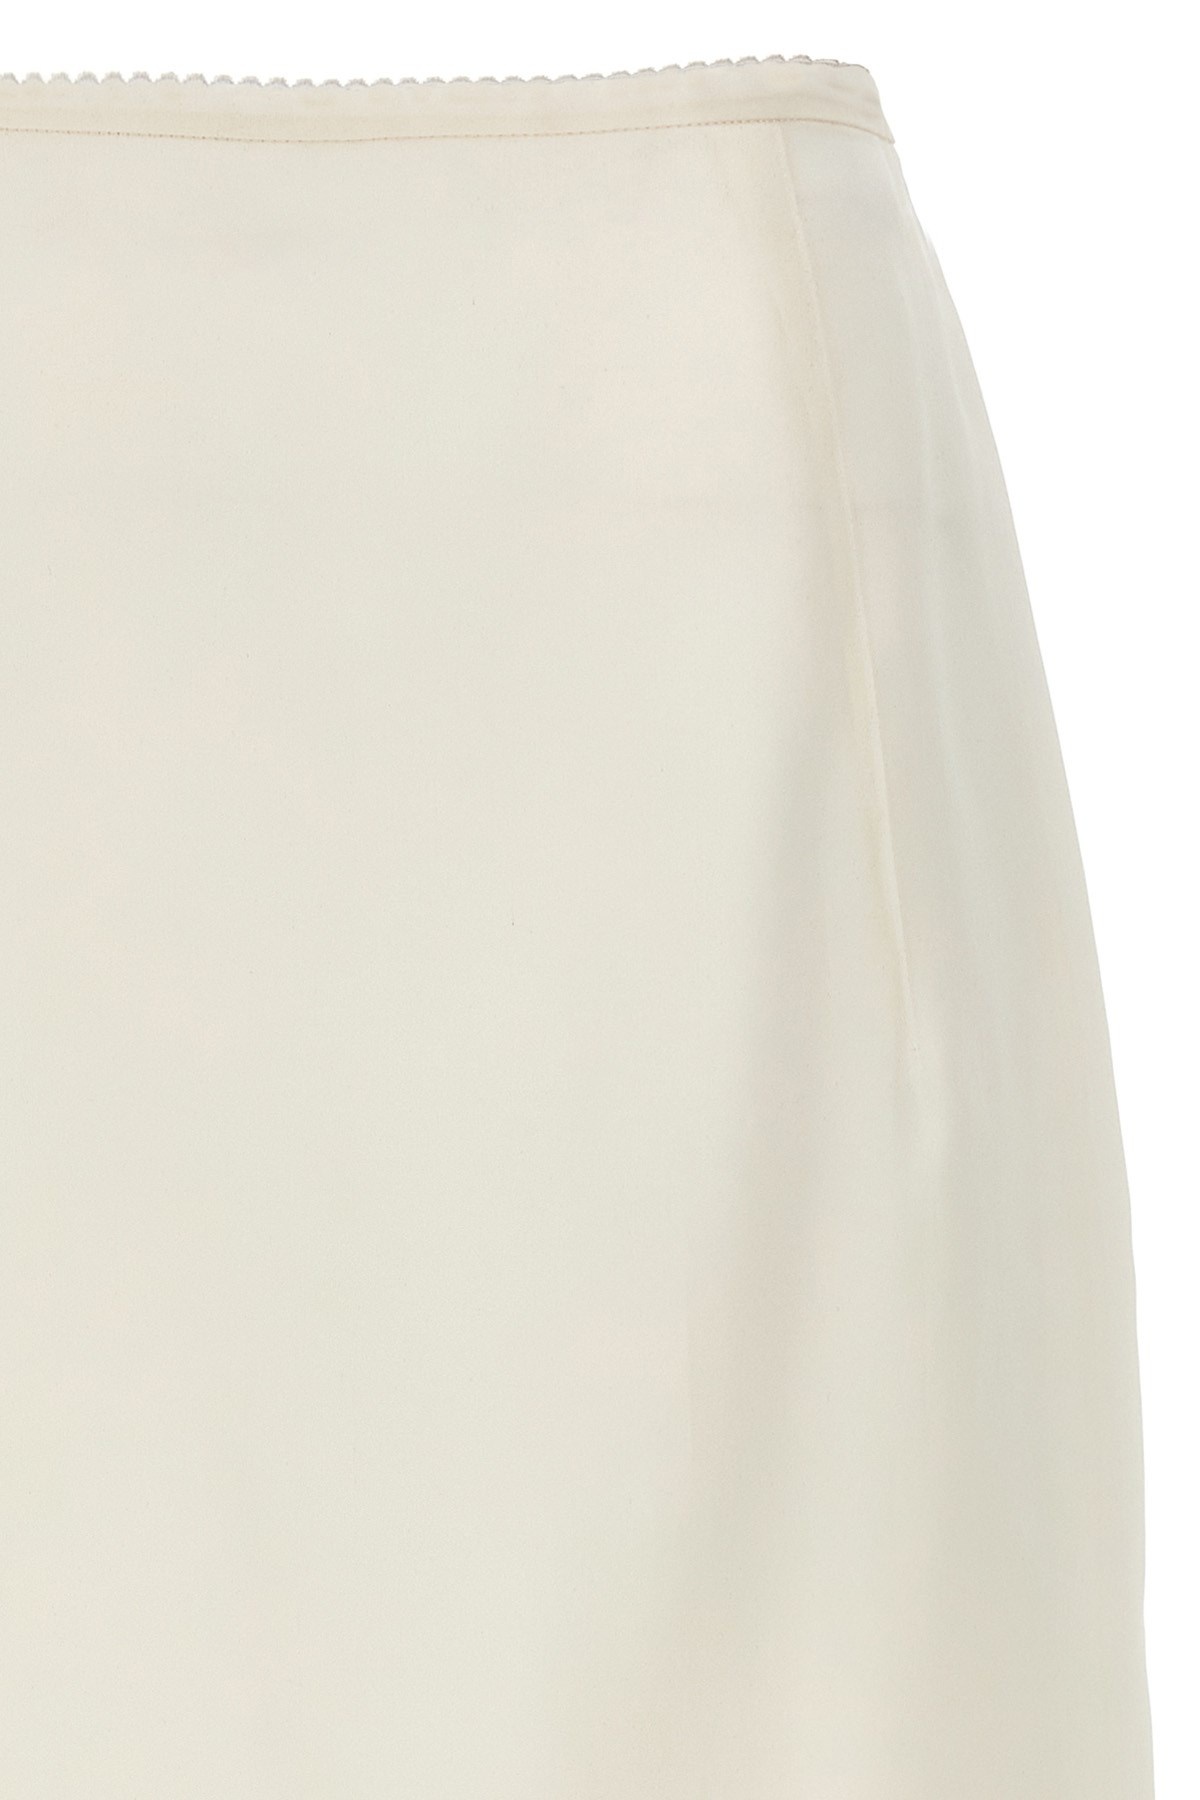 Silk longuette skirt - 3